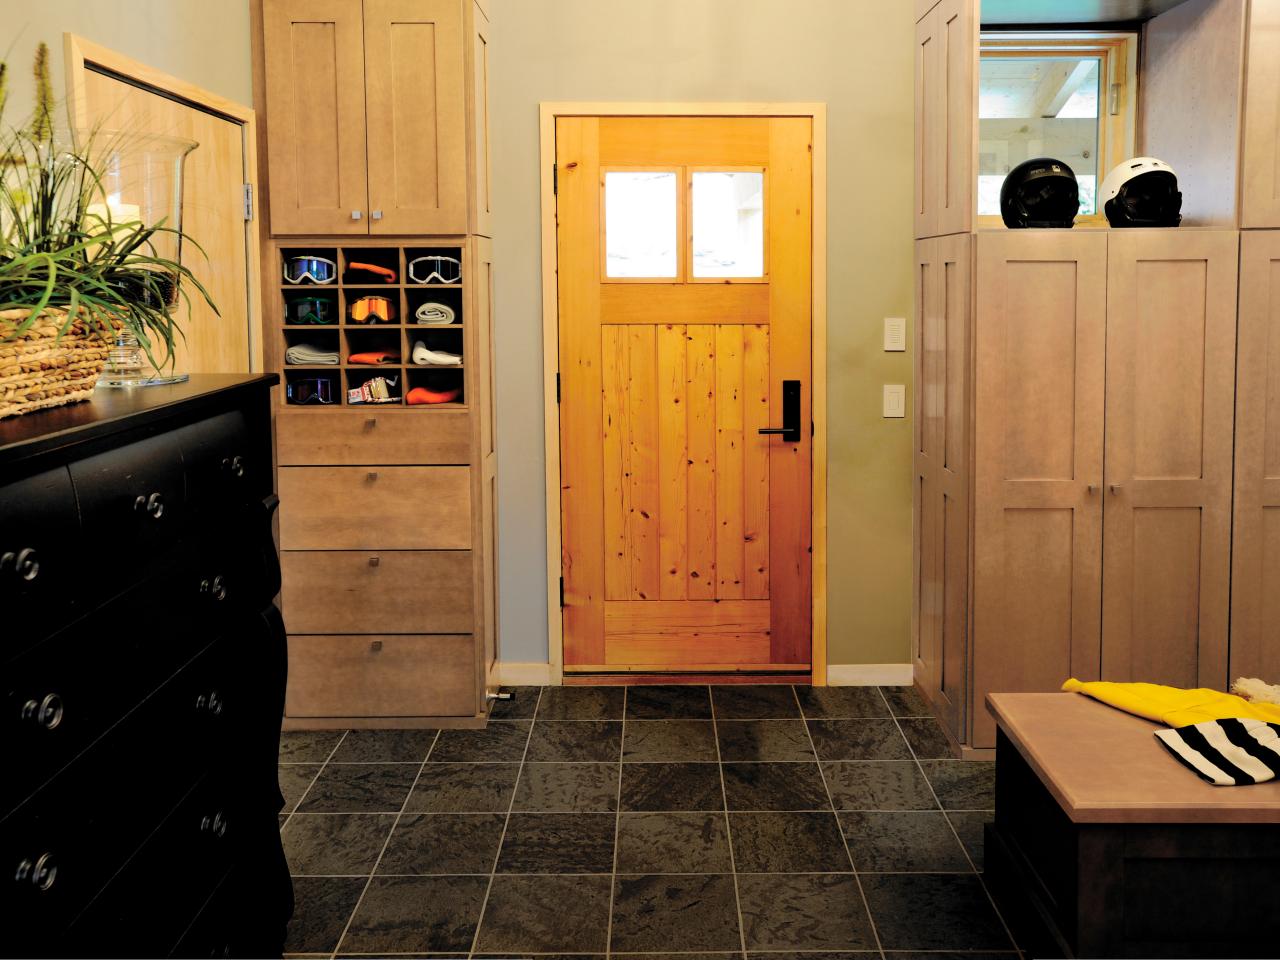 Basement and Cellar Door Options | HGTV